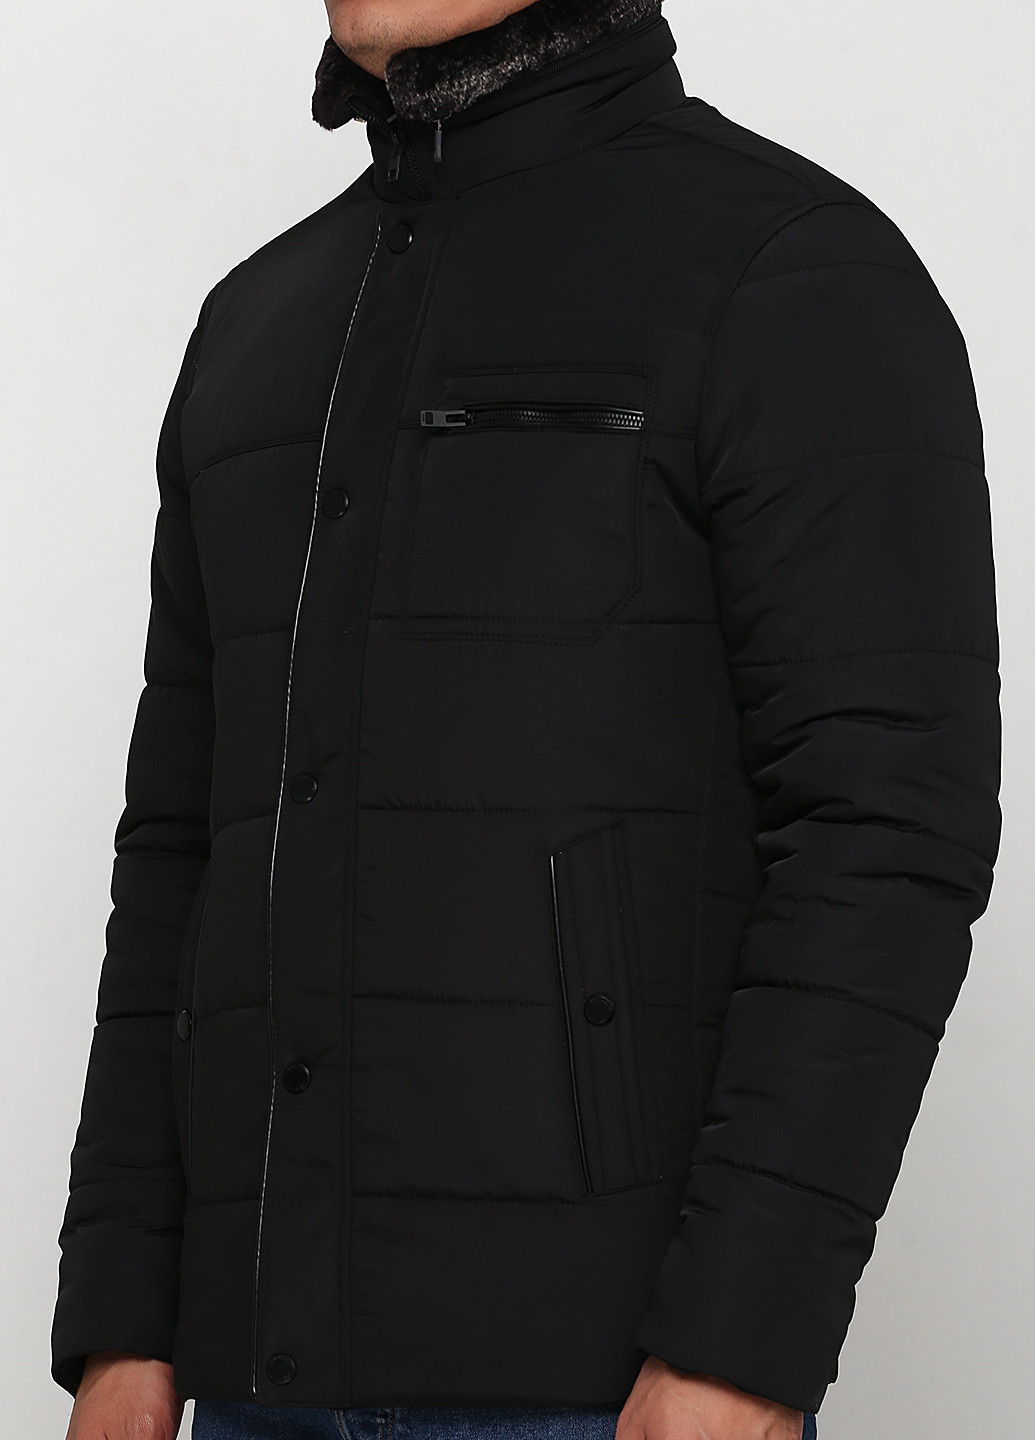 Черная зимняя куртка Man's Wear